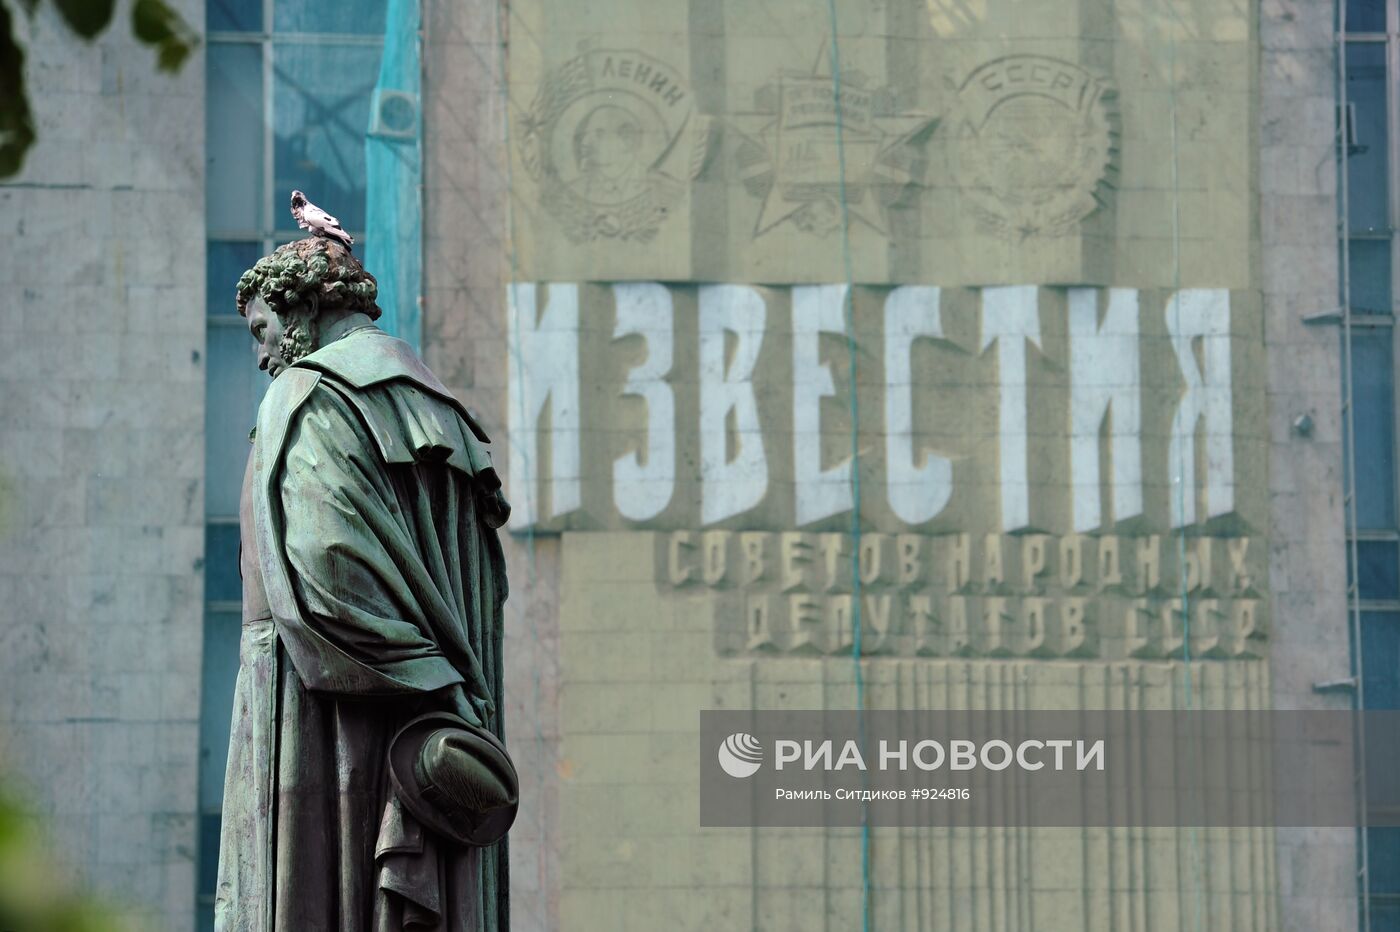 Фасад здания газеты "Известия"